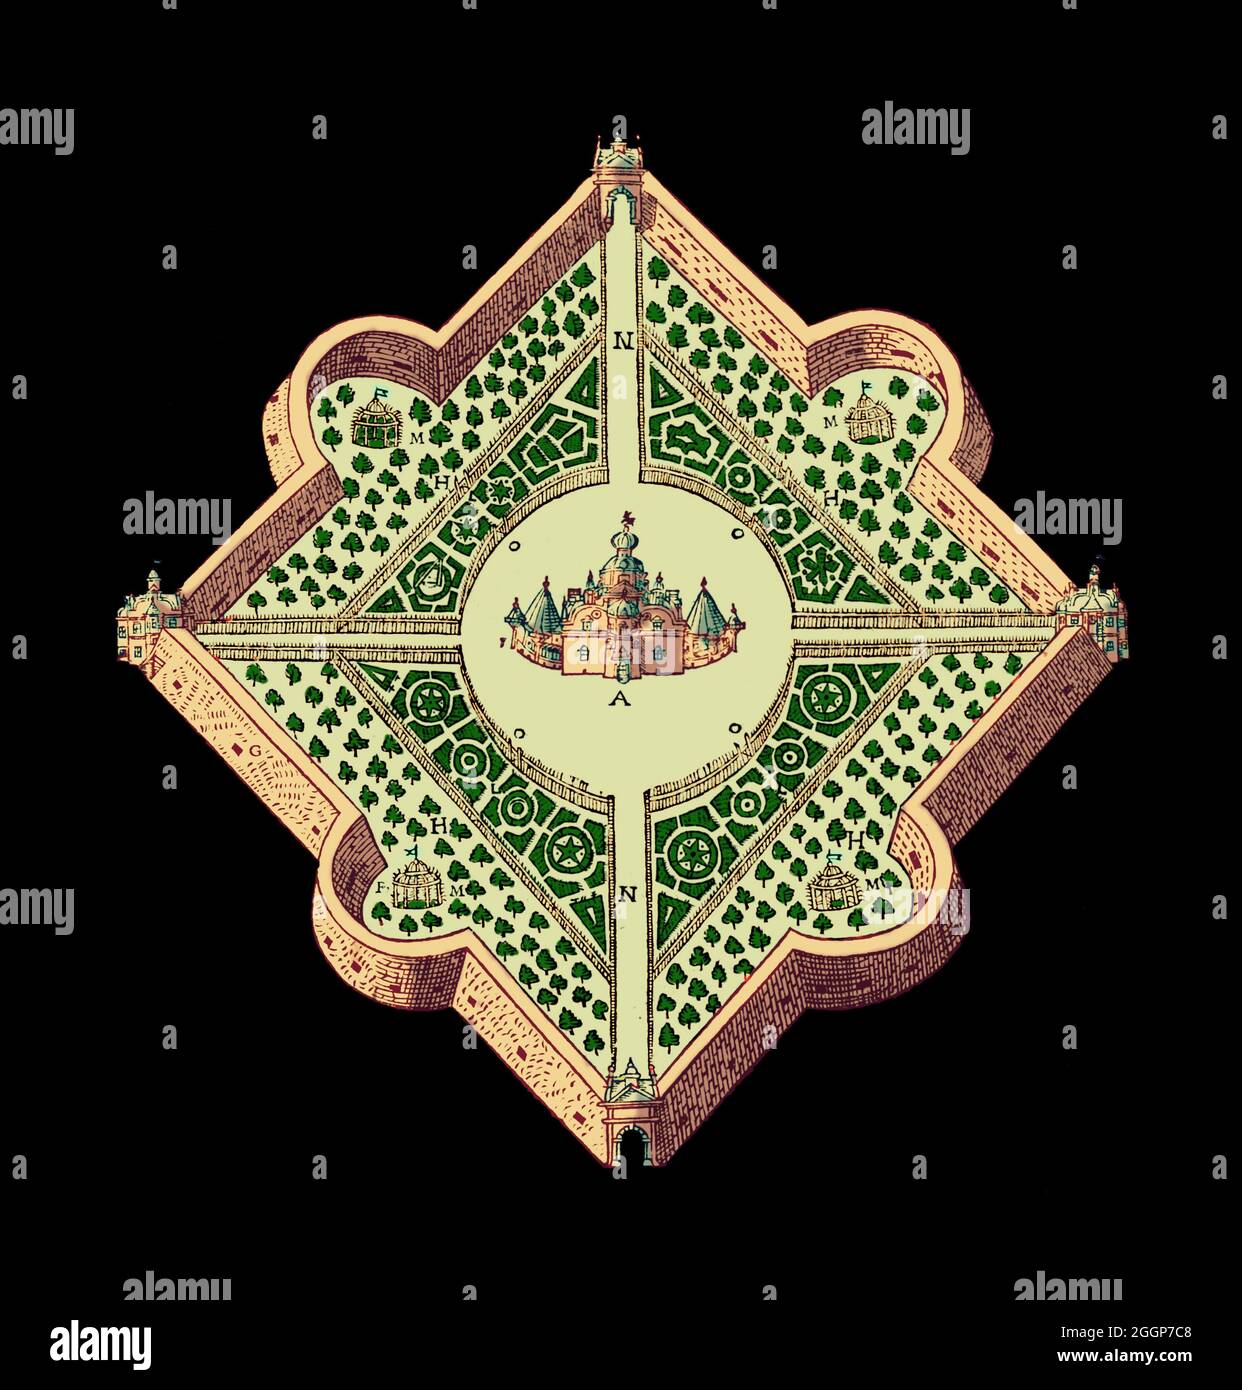 Kolorierte Gravur, die das Design von Tycho Brahe's Uraniborg Palast-Observatorium und Gärten zeigt. Uraniborg ('das Schloss von Urania') war ein astronomisches Observatorium, das um 1576 auf Hven, einer Insel, die damals zu Dänemark gehörte, erbaut wurde. Diese Abbildung zeigt Tychos Plan der Gärten mit dem Hauptgebäude in der Mitte und anderen Strukturen innerhalb der Außenwände. Das Design war präzise an den Himmelsrichtungen des Kompasses orientiert. Stockfoto